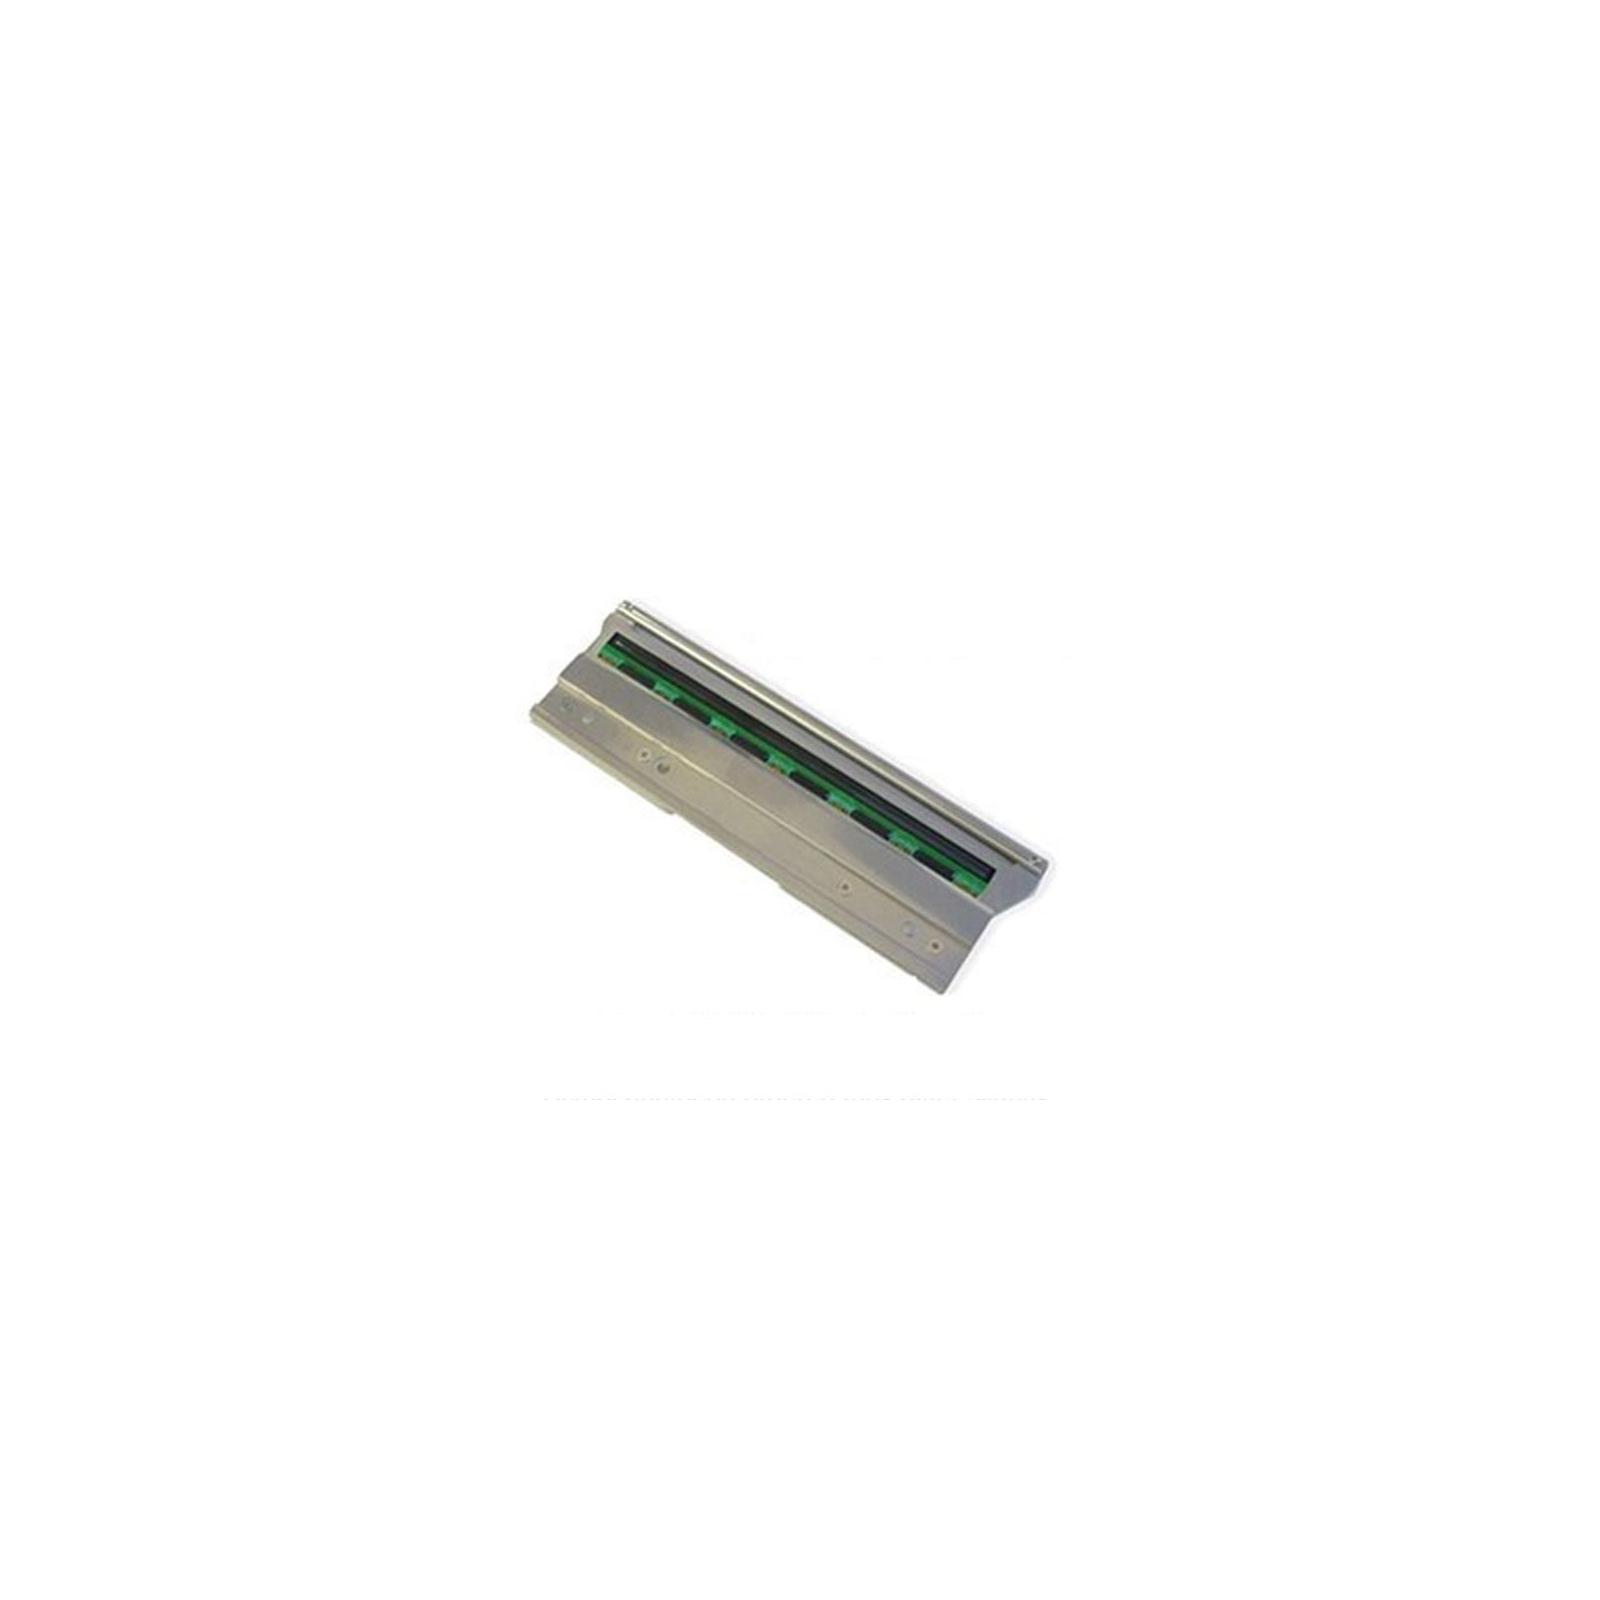 Печатающая головка для термопринтера Citizen CL-S703, 300 dpi (JN09804-0)